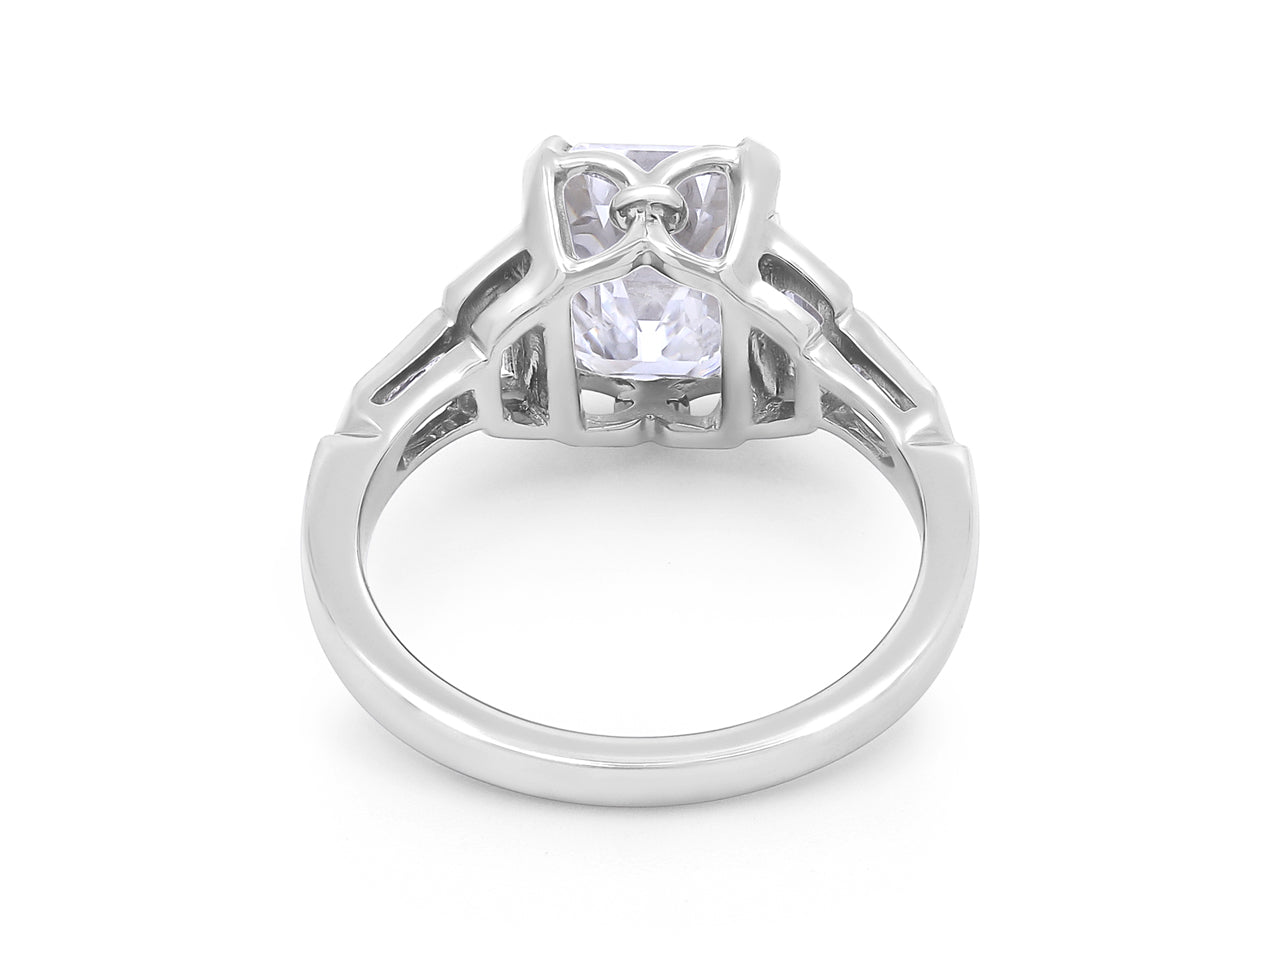 Asscher Cut Diamond Ring, 3.02 carats D/VVS-2, in Platinum